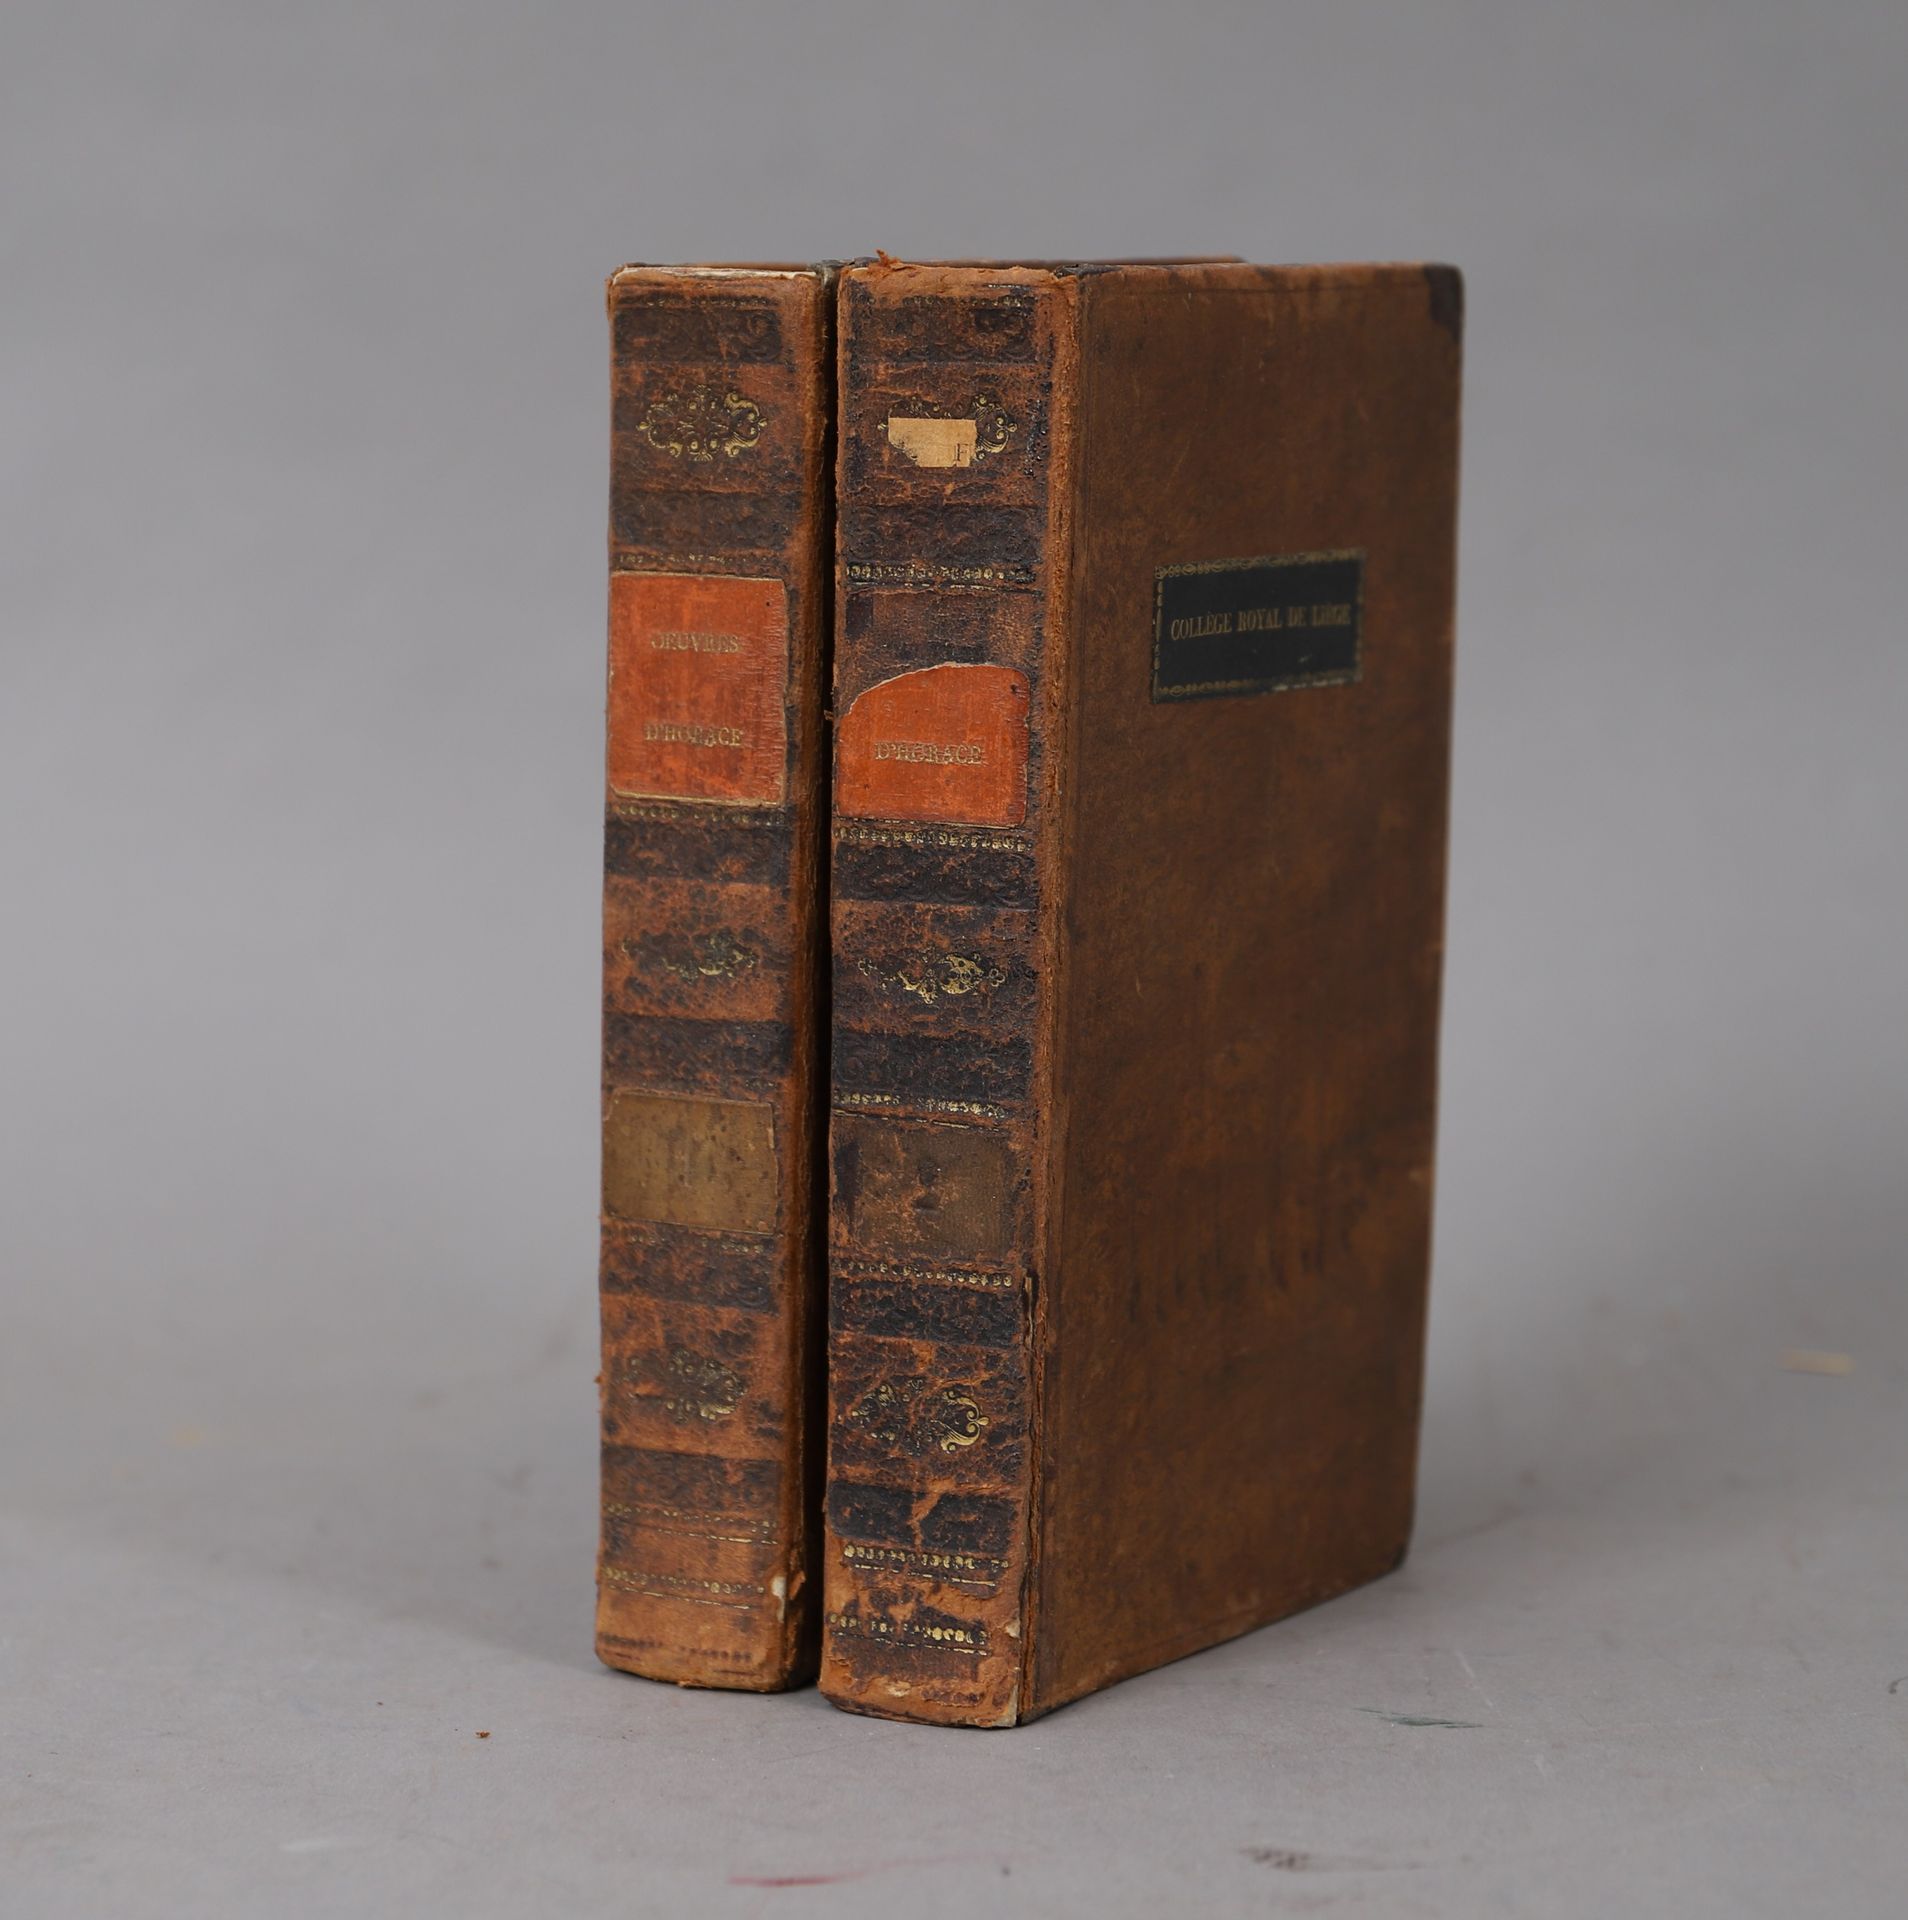 Null Werke von Horaz

1823

2 gebundene Bände.